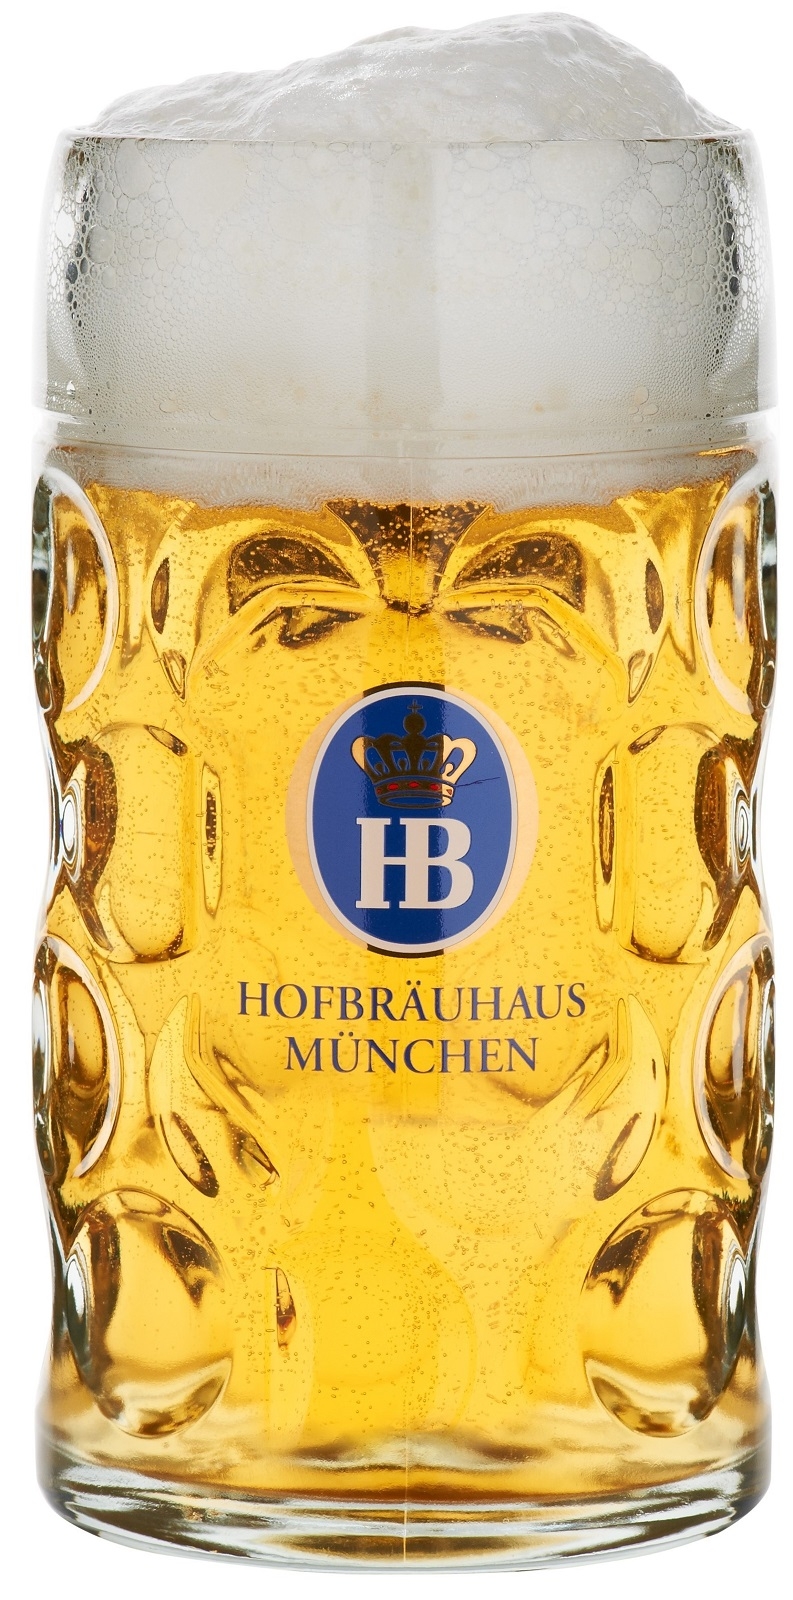 Hofbrauhaus Munich Munchen German Glass Dimple Beer Mug 1 L